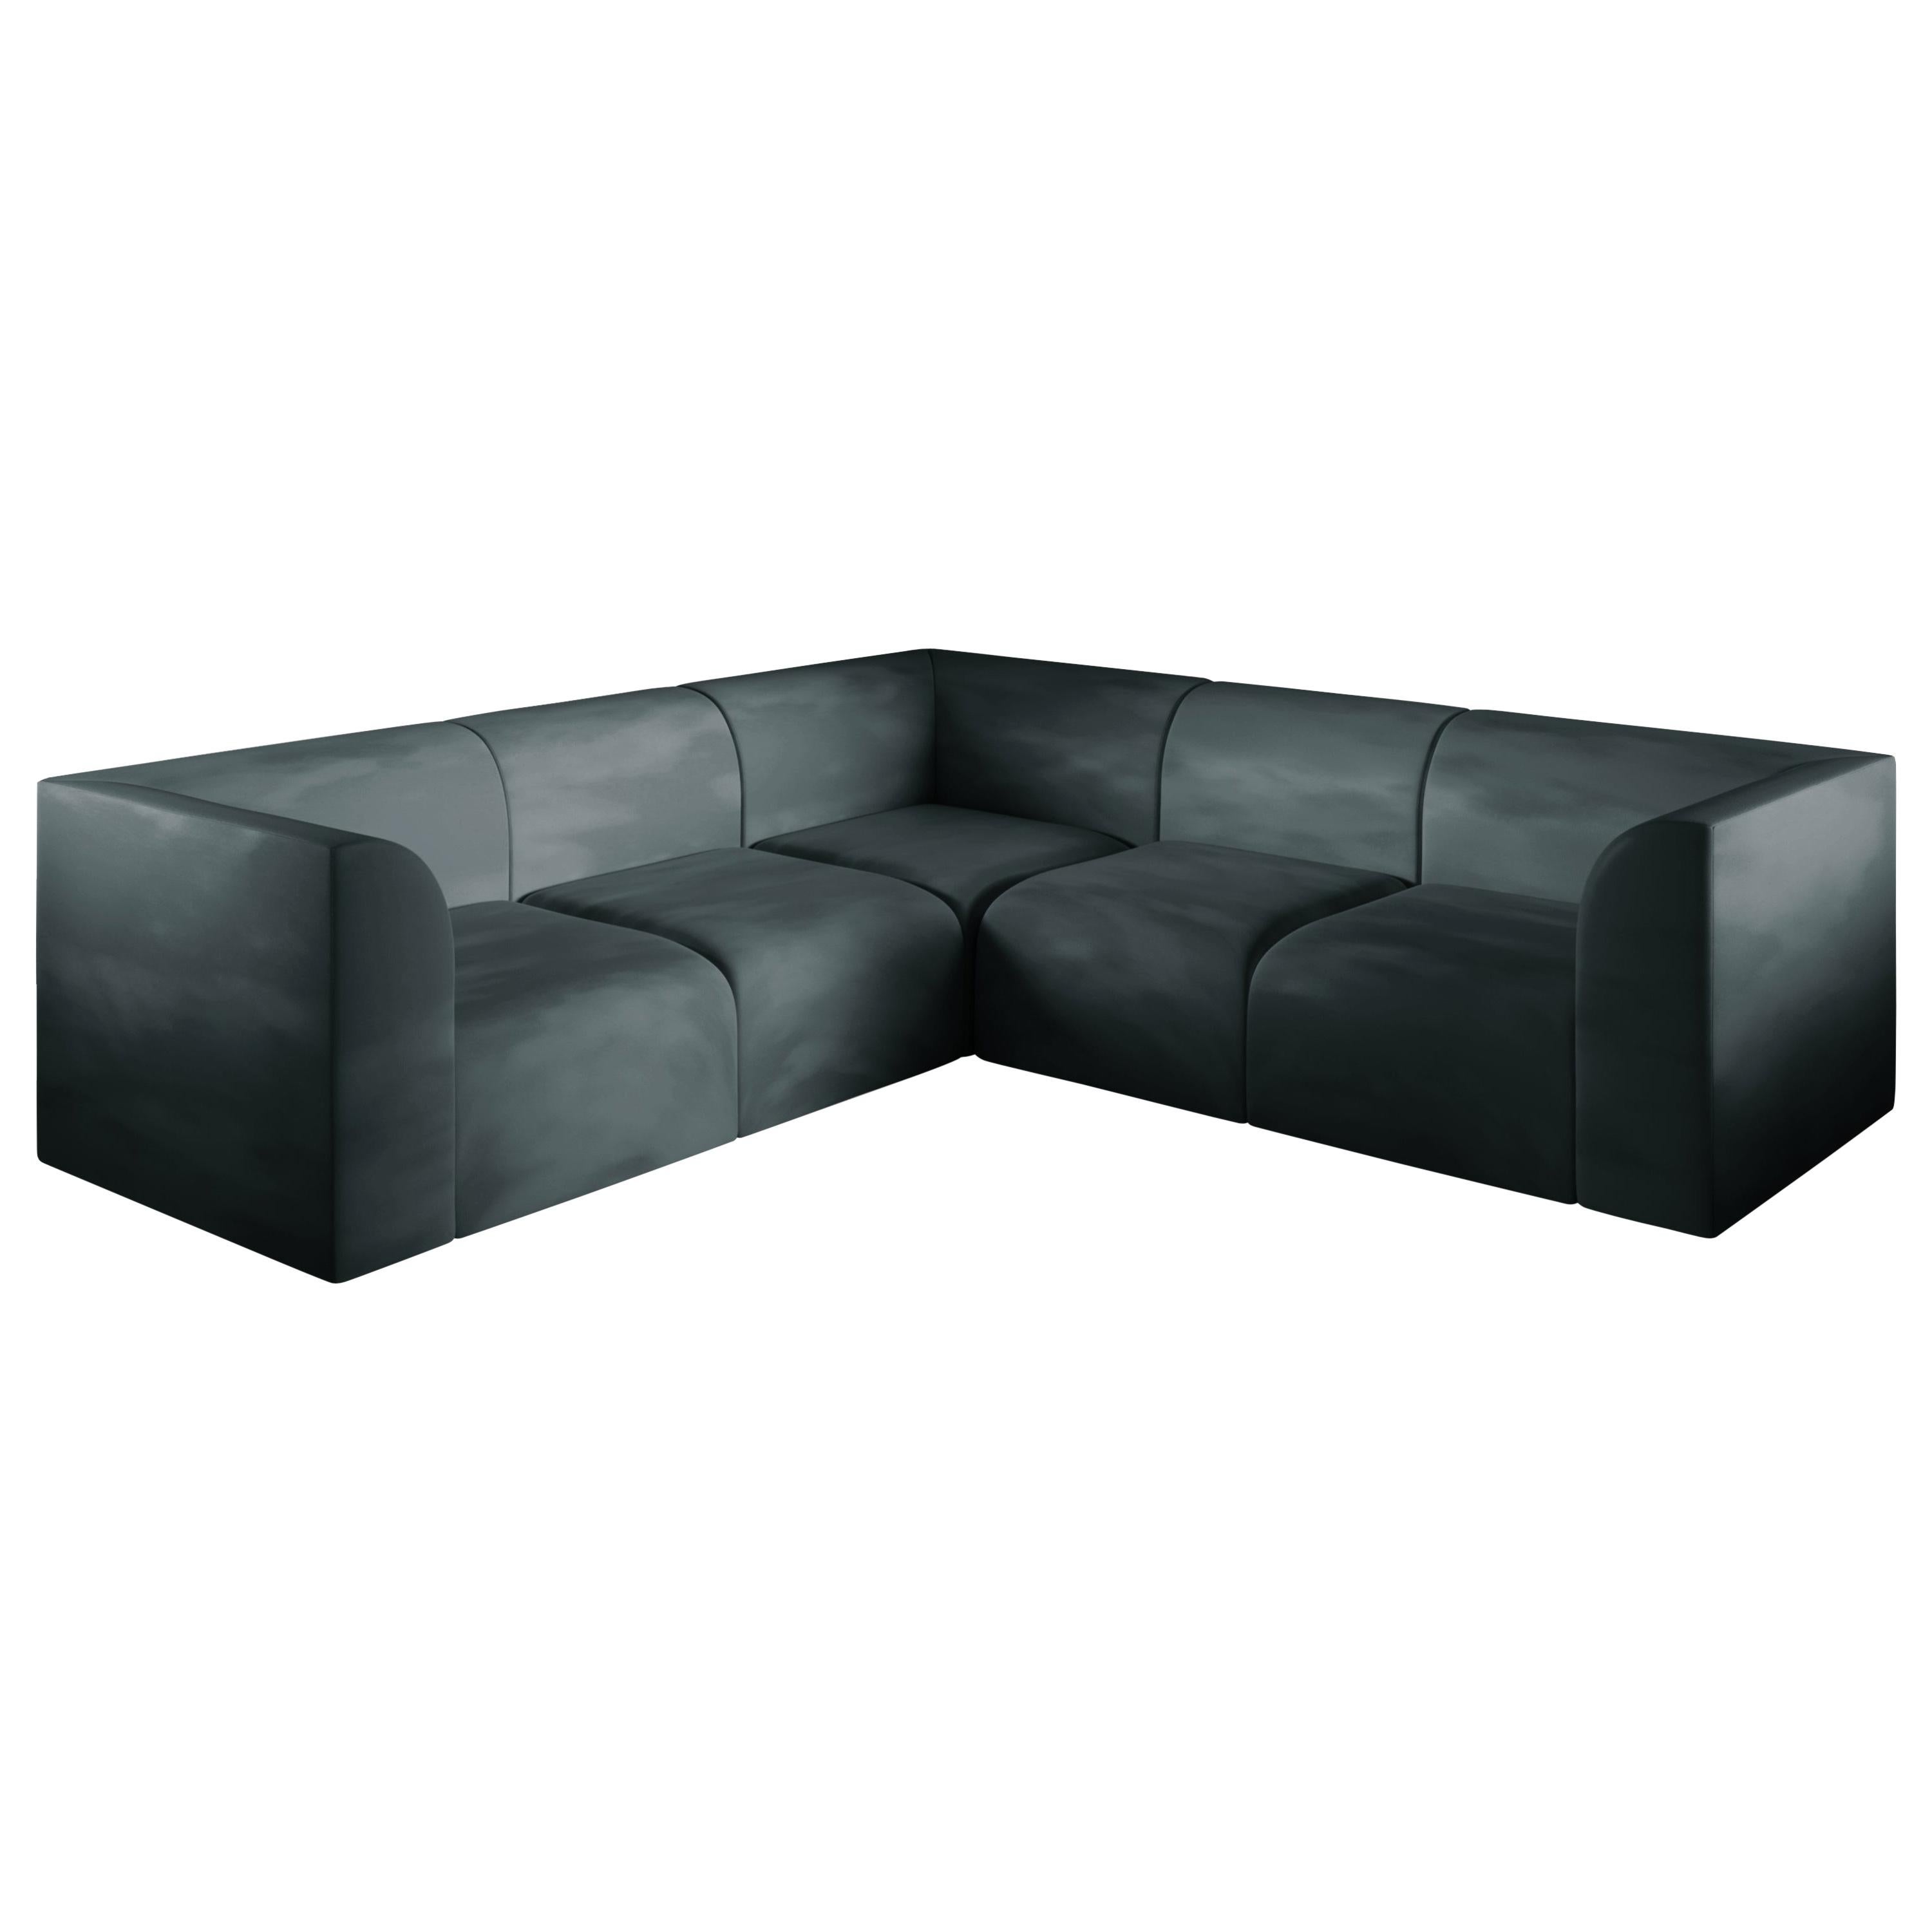 Archi L Shape Contemporary Sofa in Fabric by Artefatto Design Studio